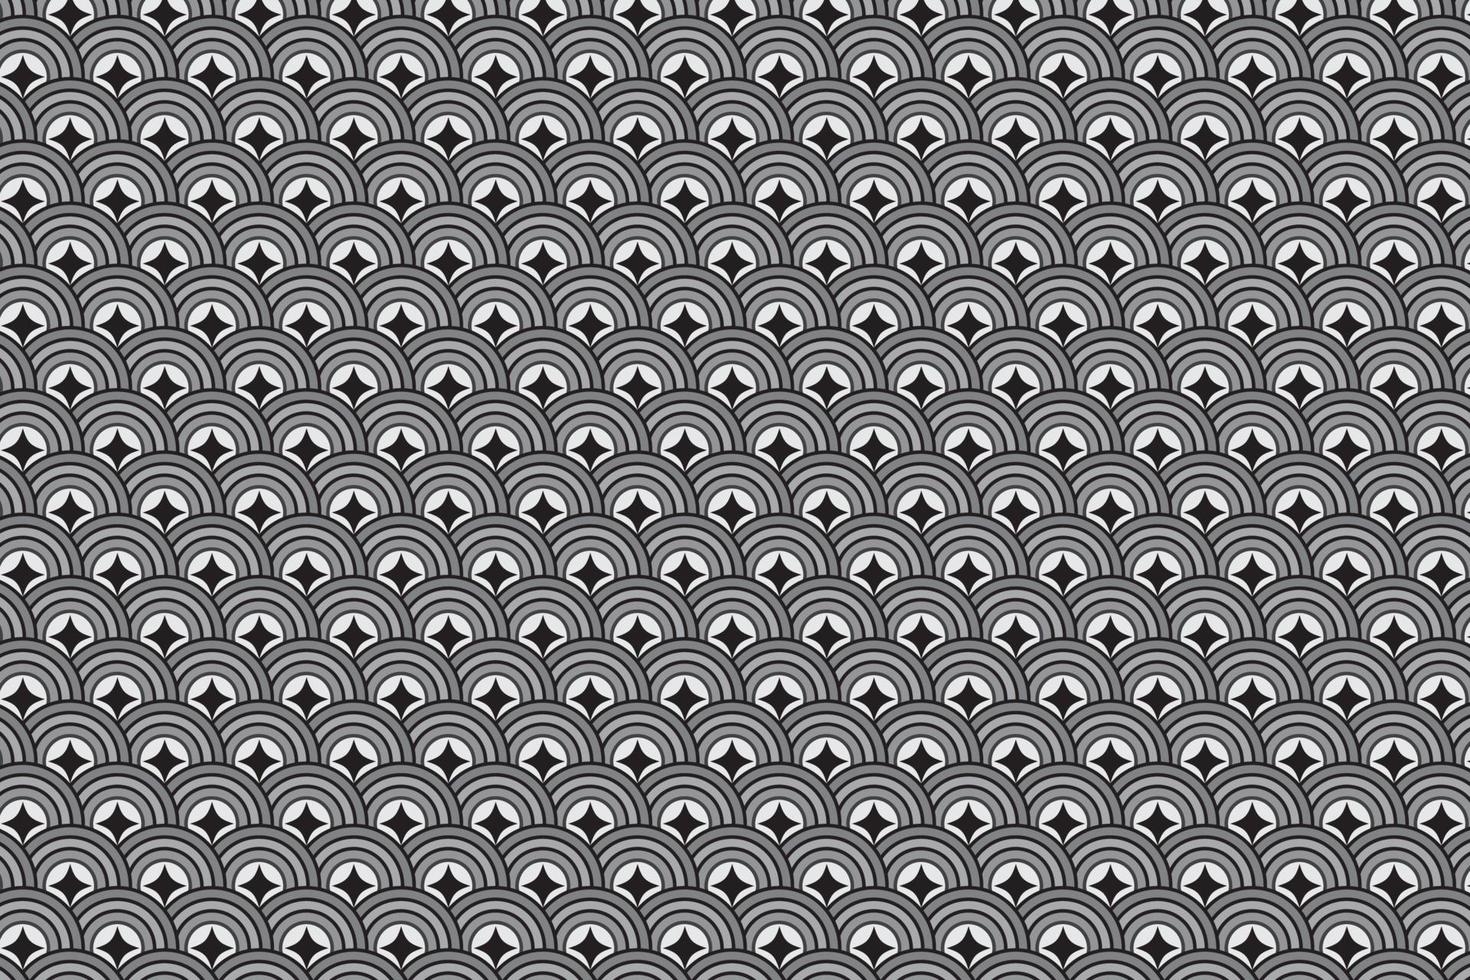 padrão com elementos geométricos em tons de cinza-preto. fundo abstrato vetor